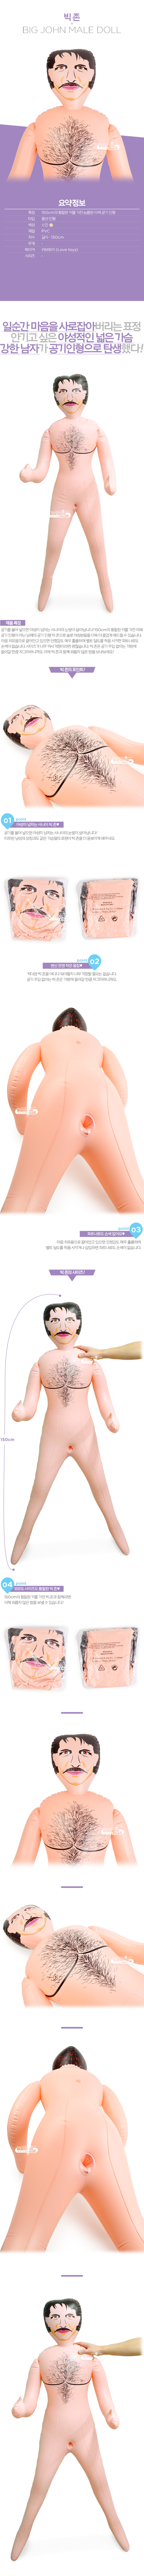 [남성 공기 인형] 빅 존(Lovetoy Big John Male Doll) - 러브토이(DS-44) (LVT)